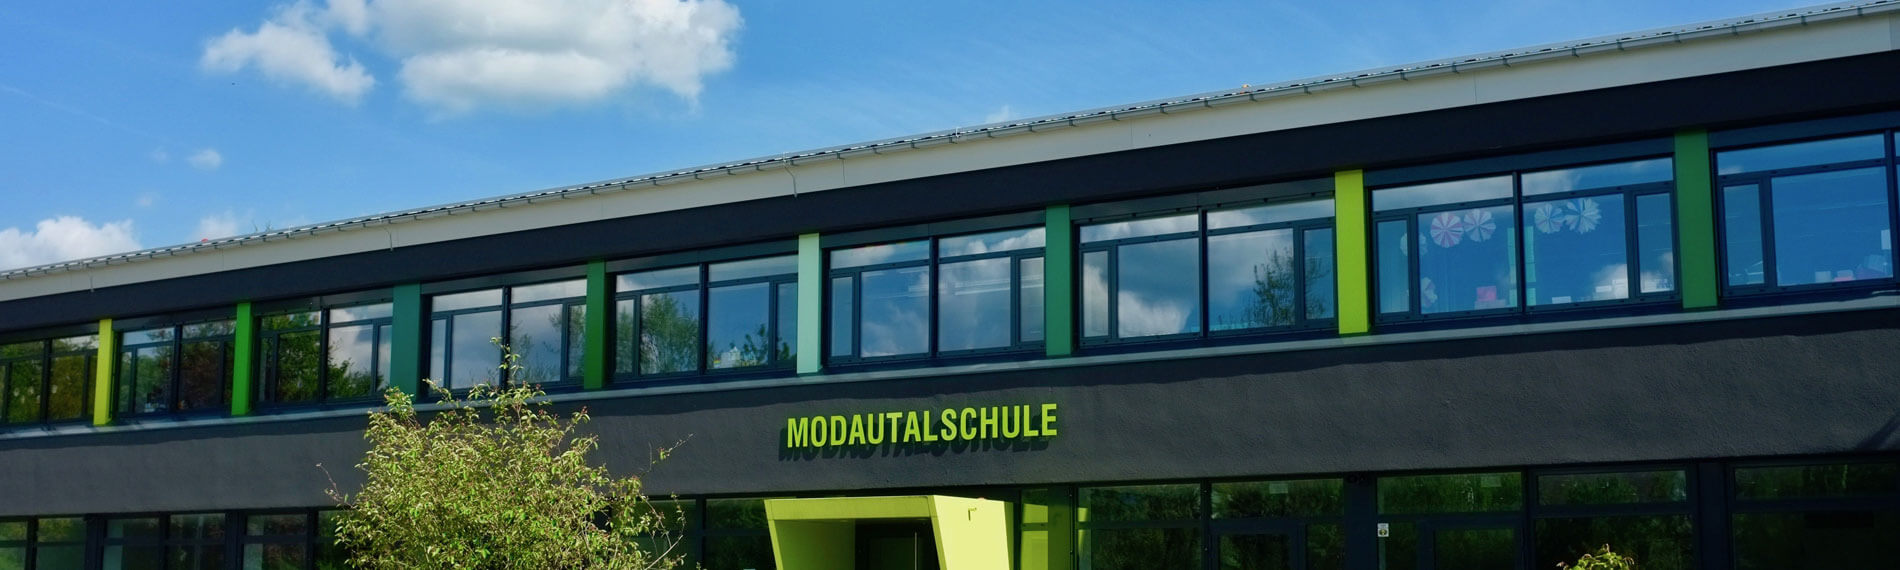 Modautalschule in Ernsthofen